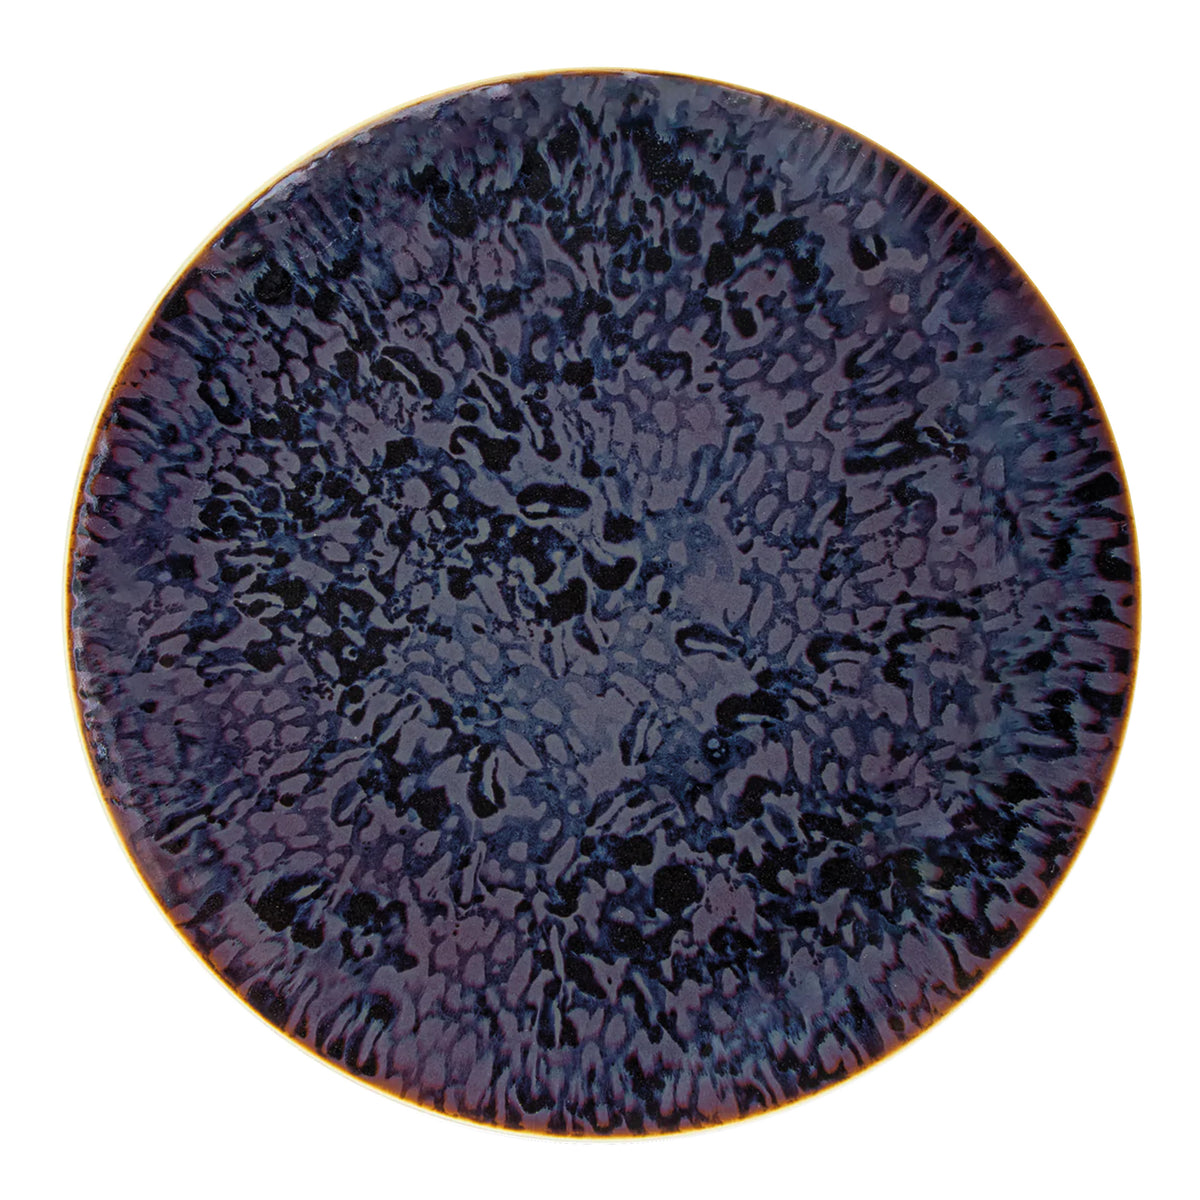 KASHMIR color net - Charger plate